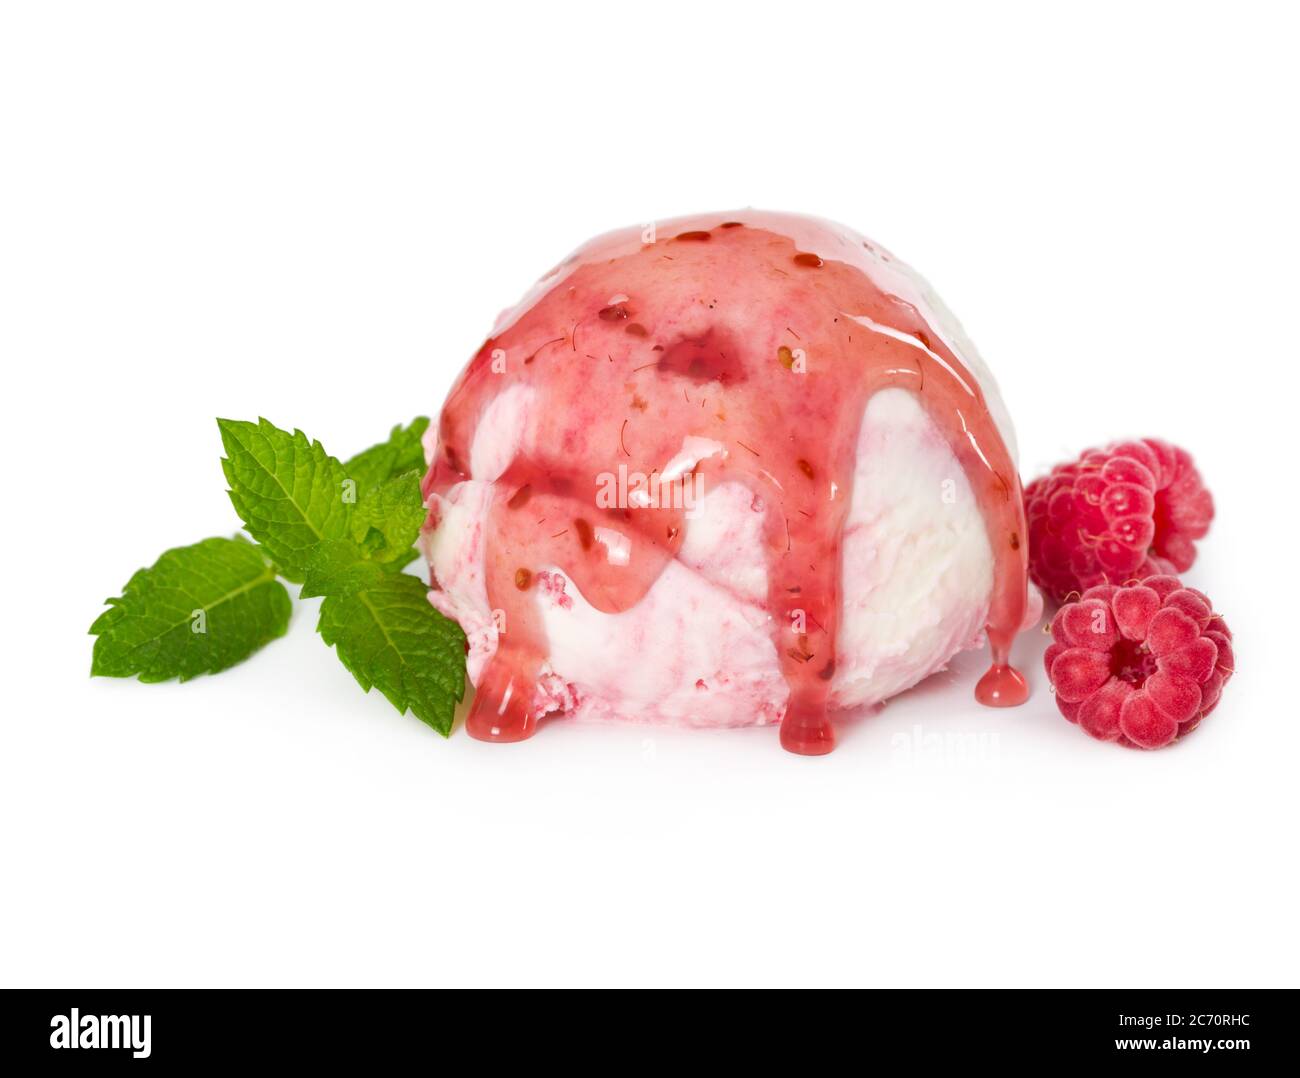 Una tazza di gelato al lampone con lamponi freschi, menta e sciroppo di lampone isolati su sfondo bianco Foto Stock